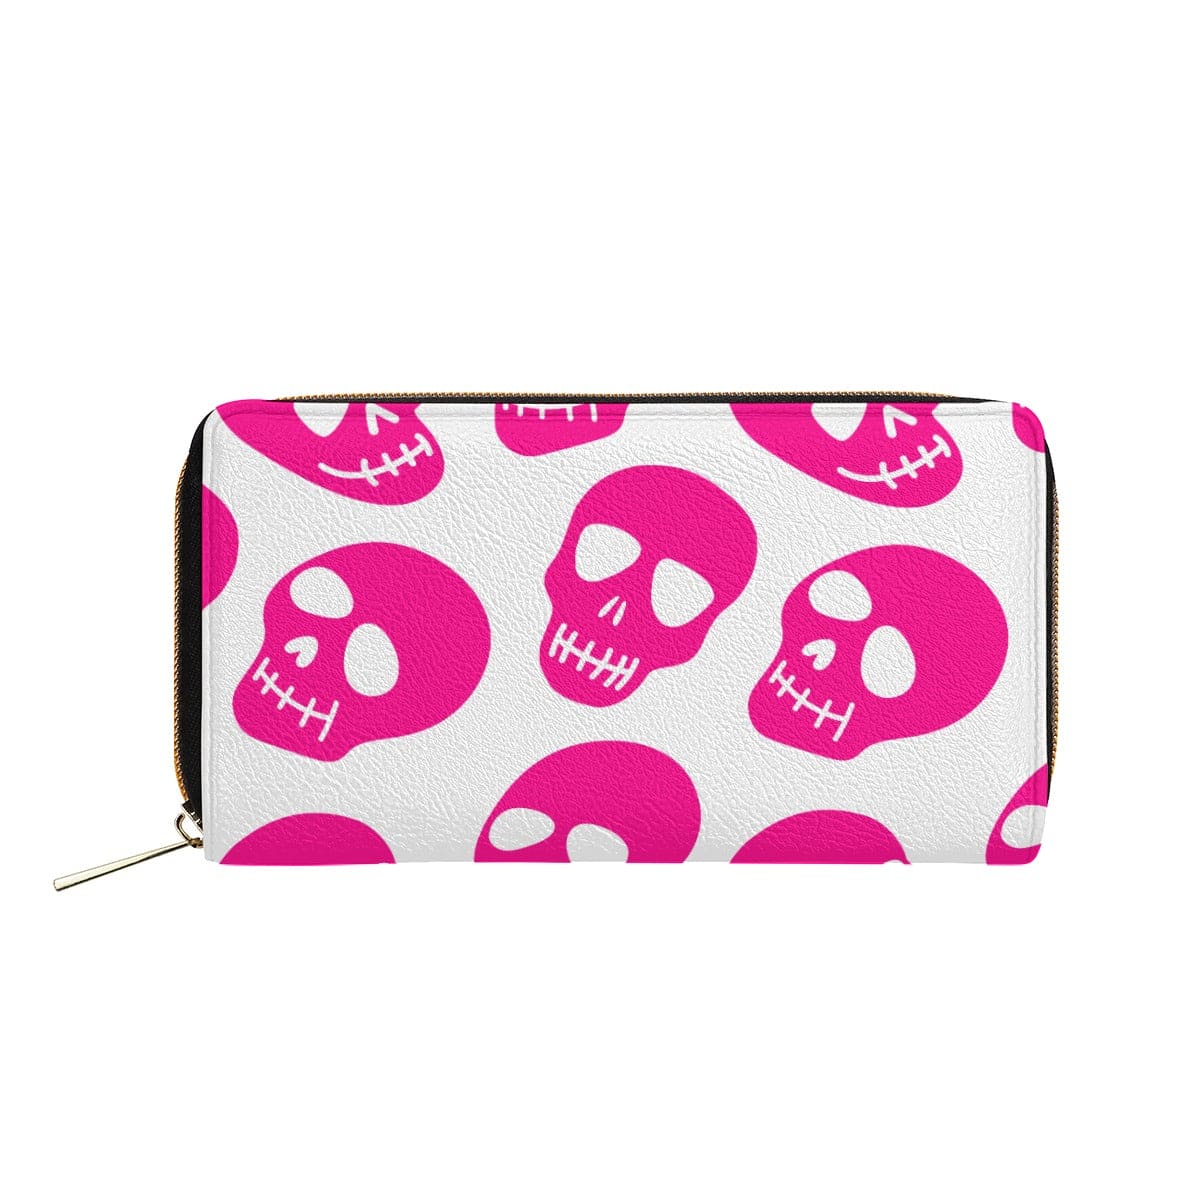 Bright Pink Skulls Wallet With Zipper Closure